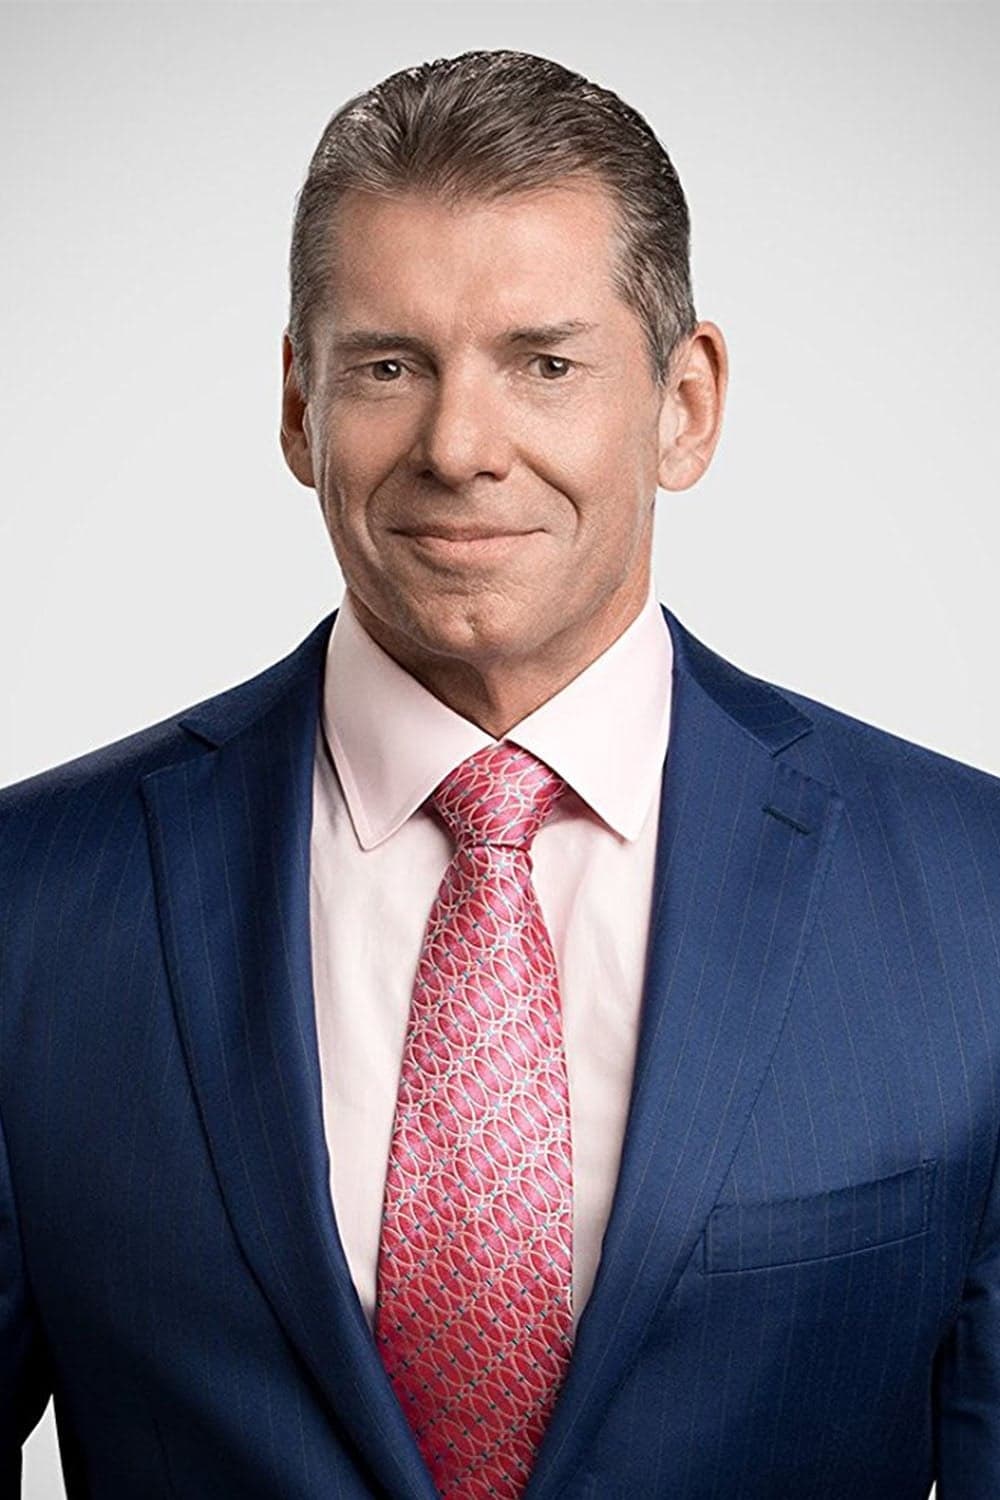 Vince McMahon | Director